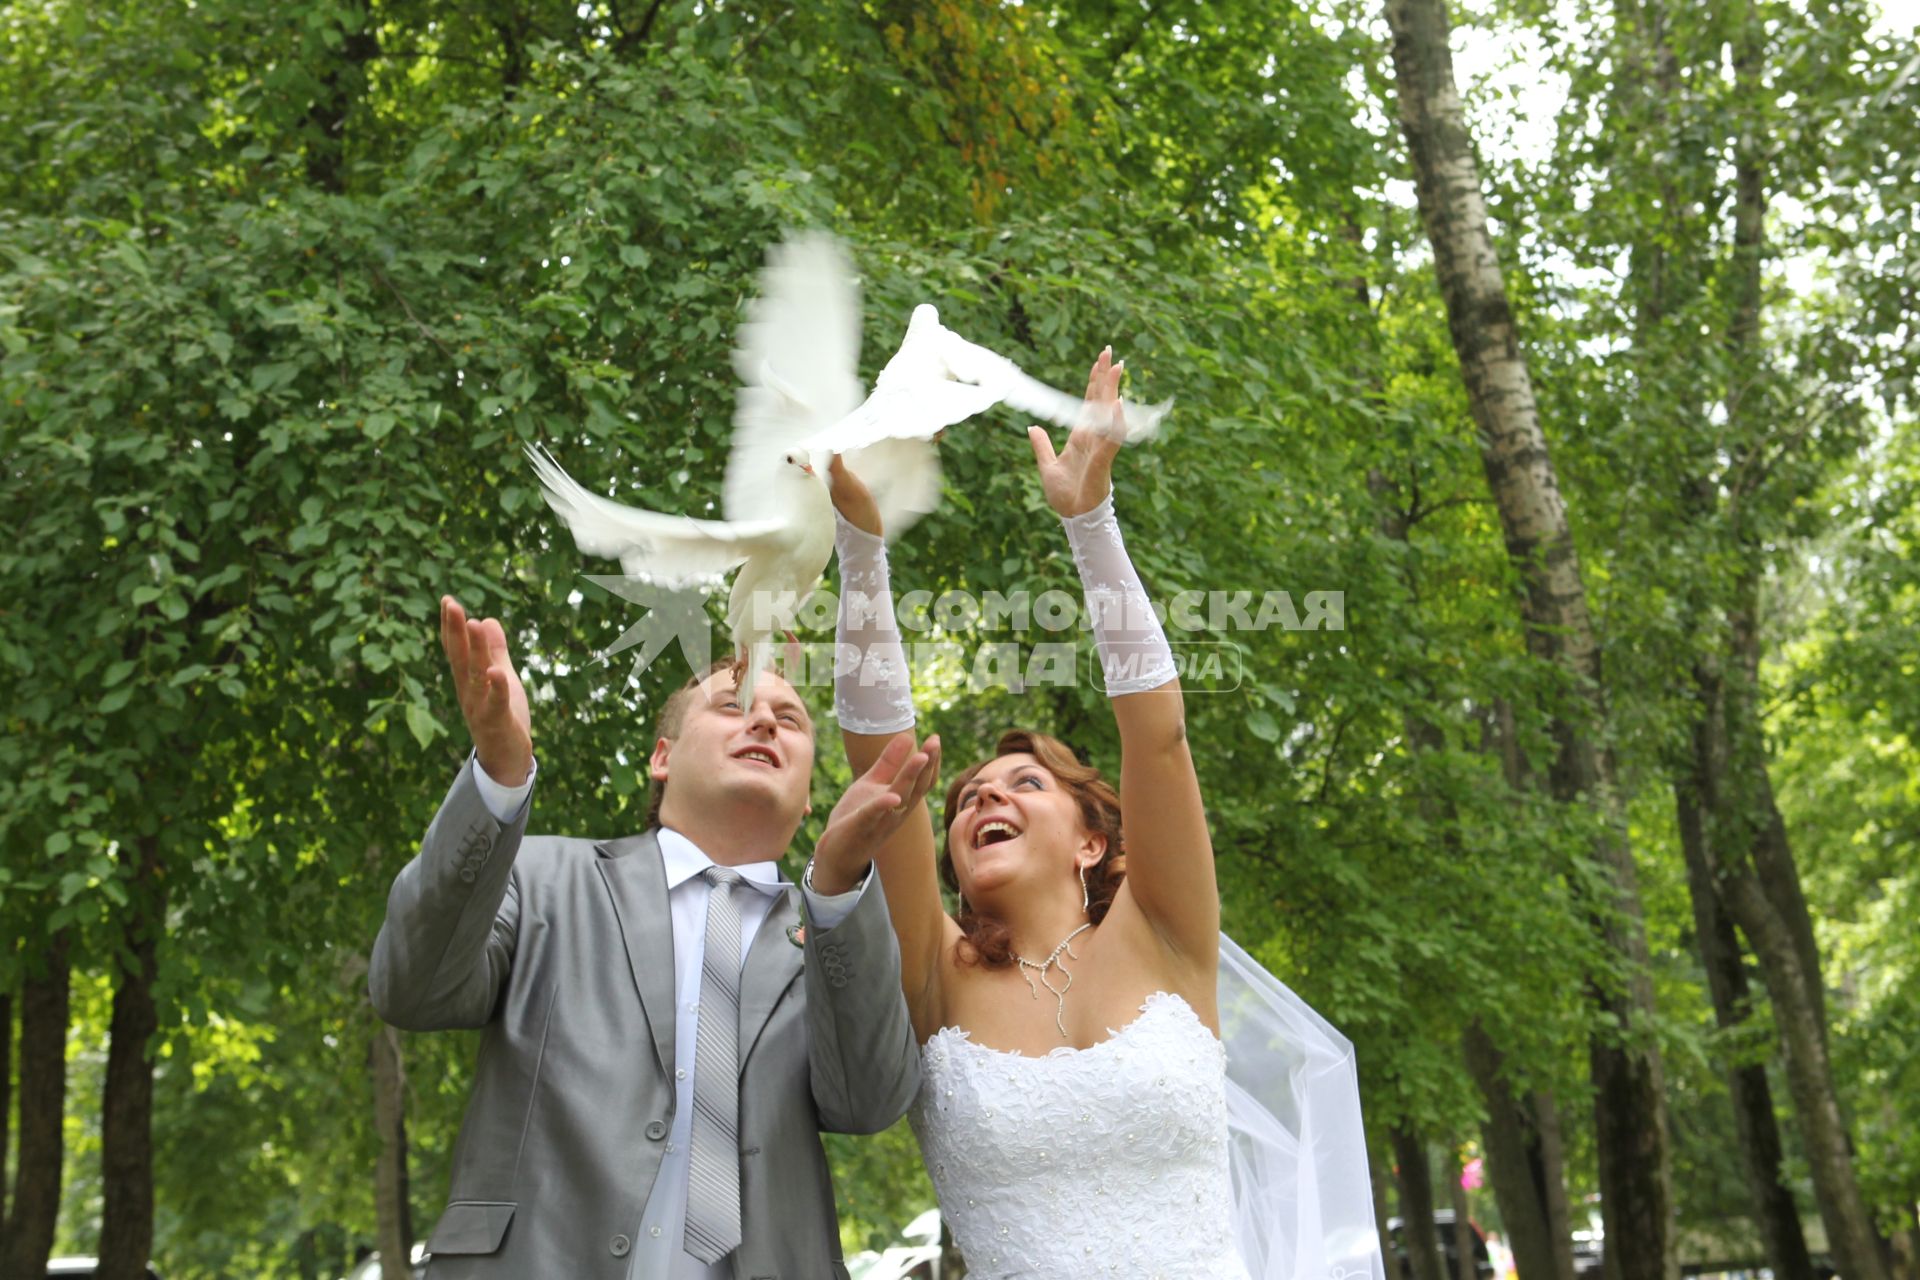 Дата: 26.06.2010, Время: 13:27. Молодая пара запускает в небо голубей.